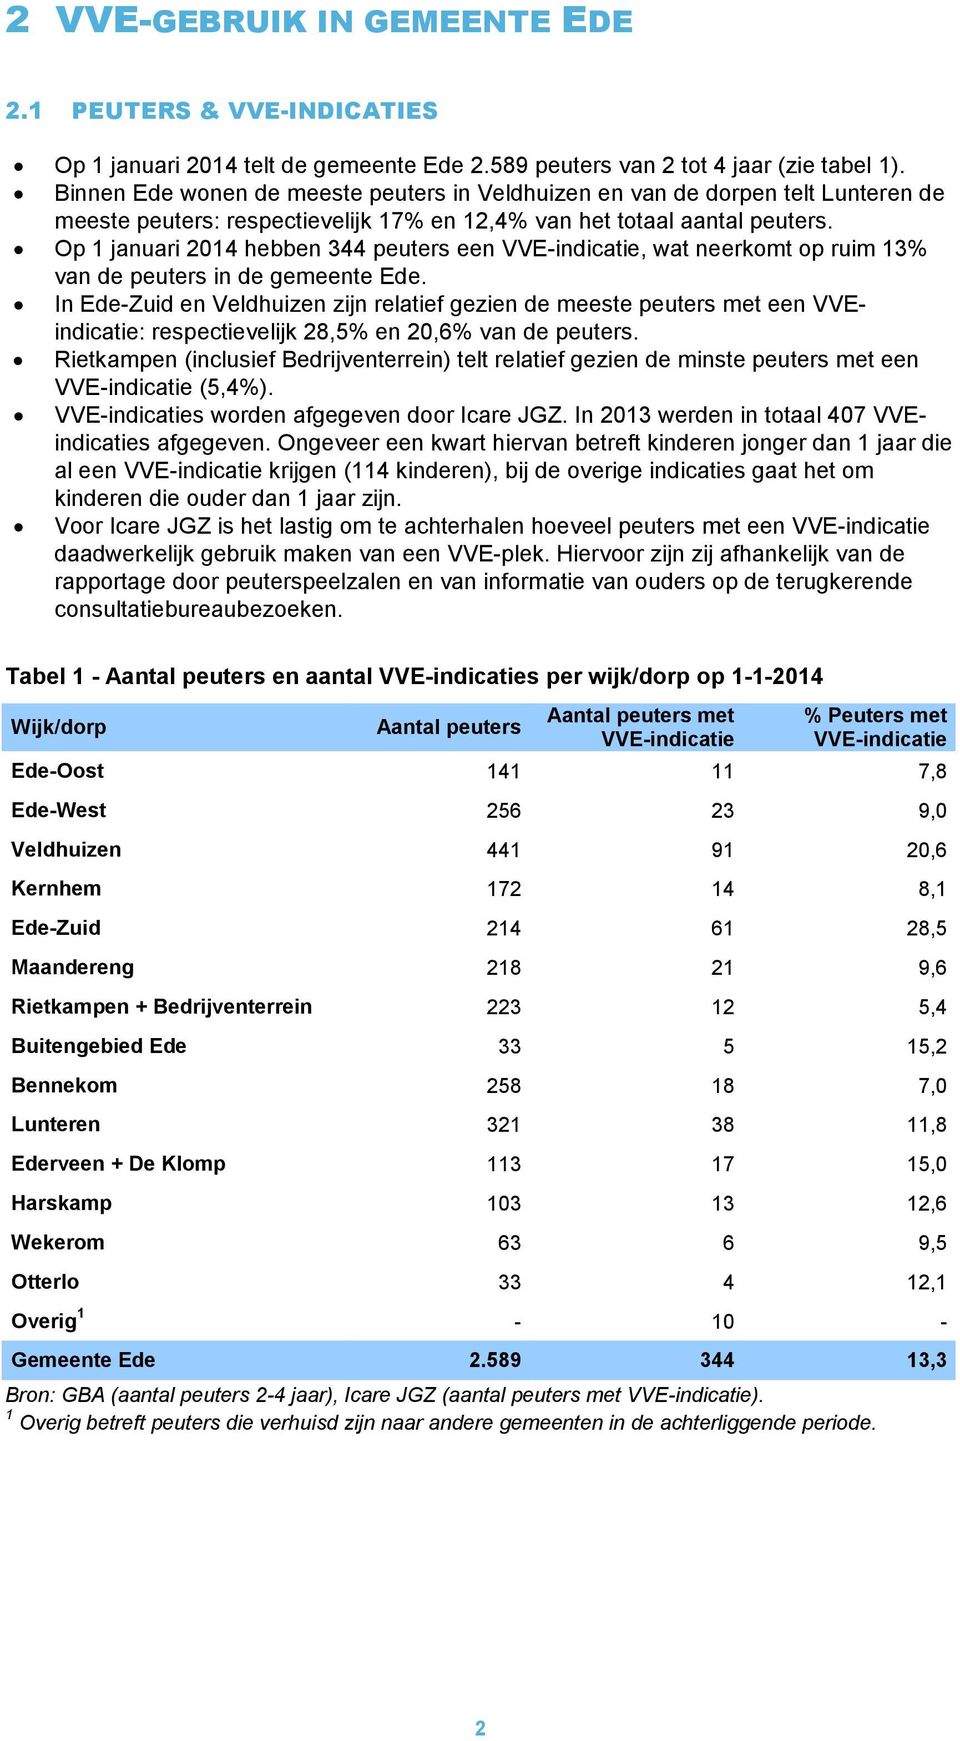 Op 1 januari 2014 hebben 344 peuters een VVE-indicatie, wat neerkomt op ruim 13% van de peuters in de gemeente Ede.